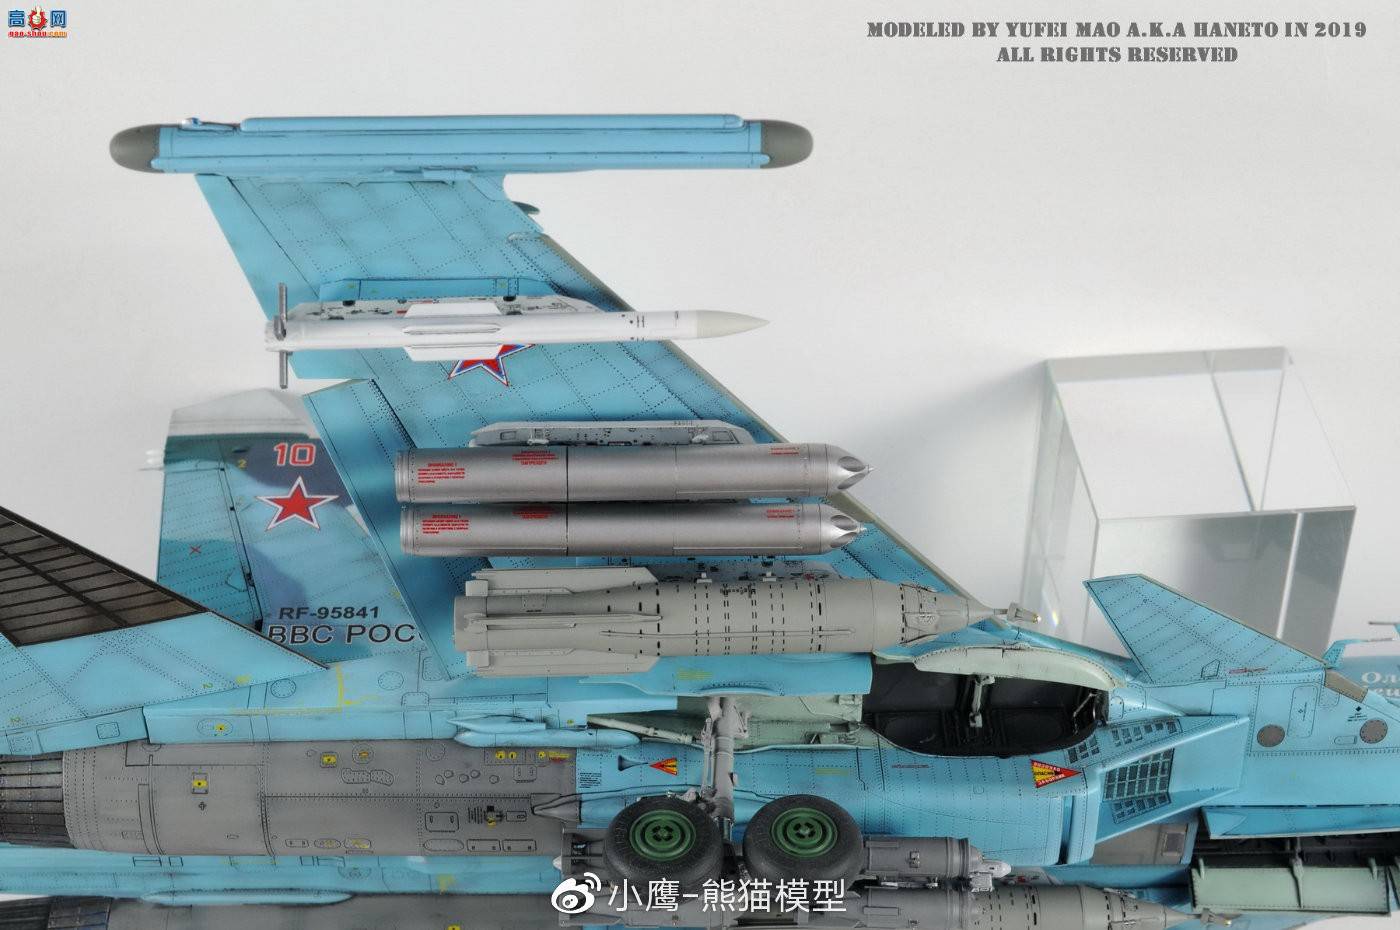 【小鹰作品】KITTY HAWK 1/48 Su-34 Fullback Frontline Bomber